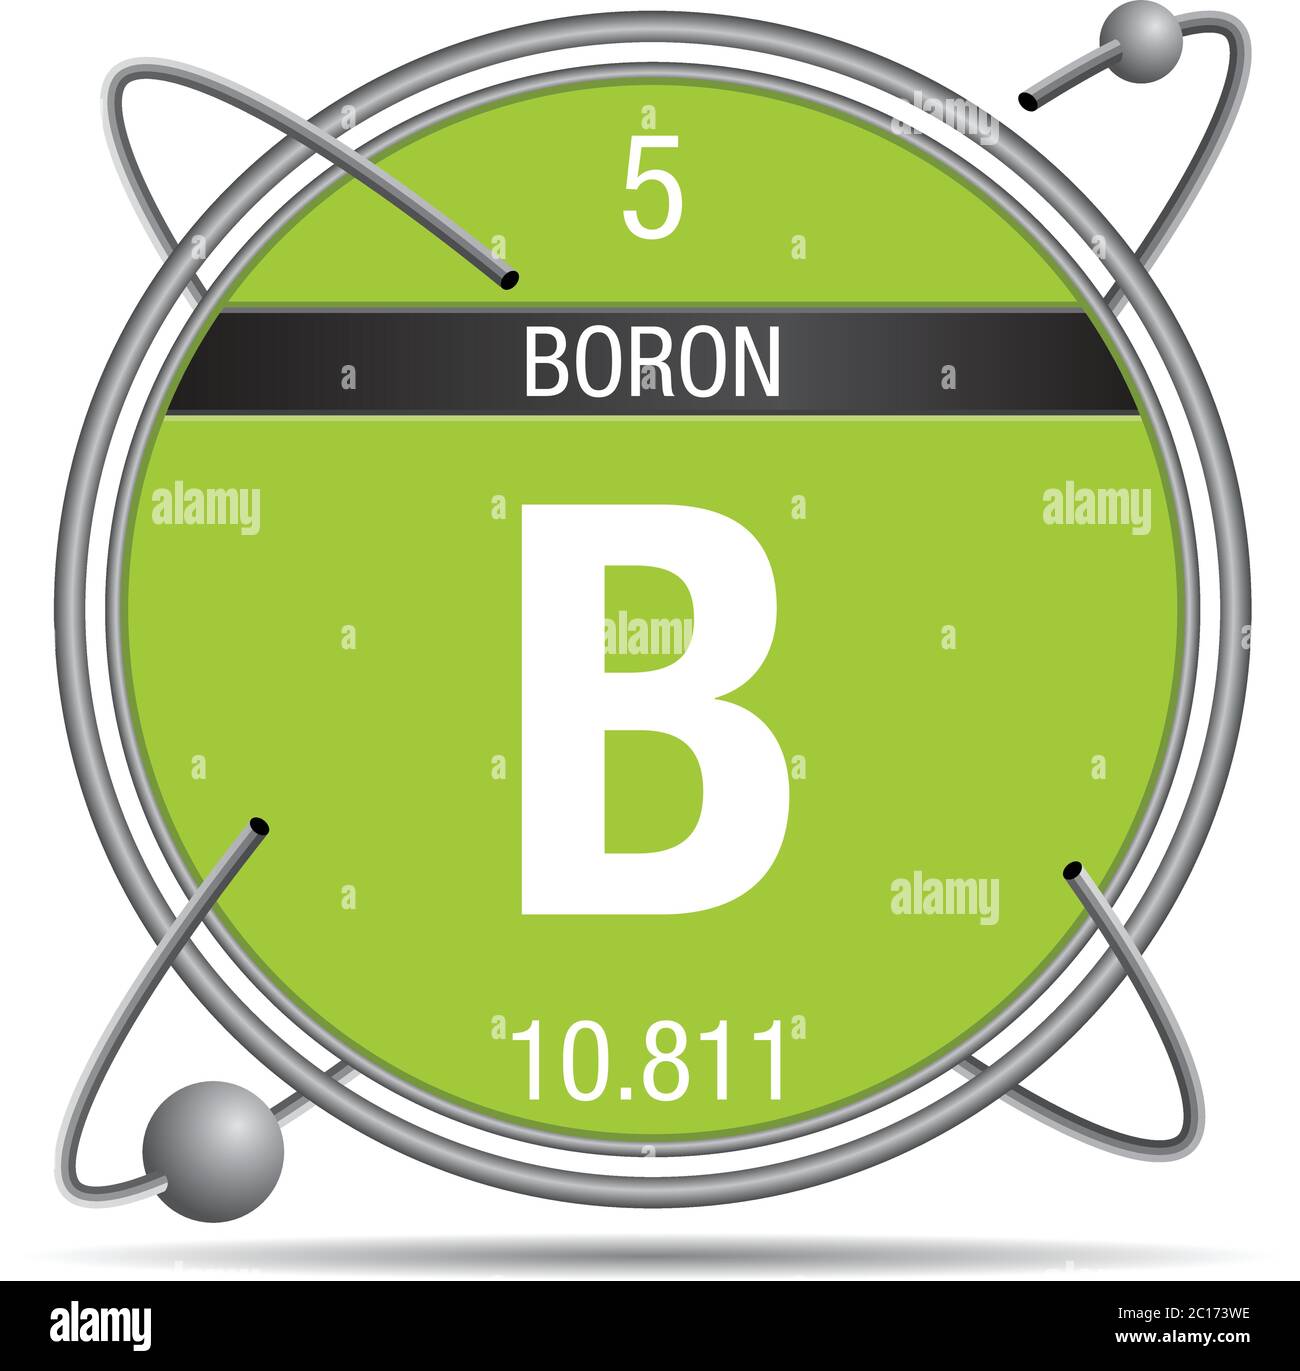 Boron Atomic number. Бор химический элемент. Диаграмма круглая 5 вектор.